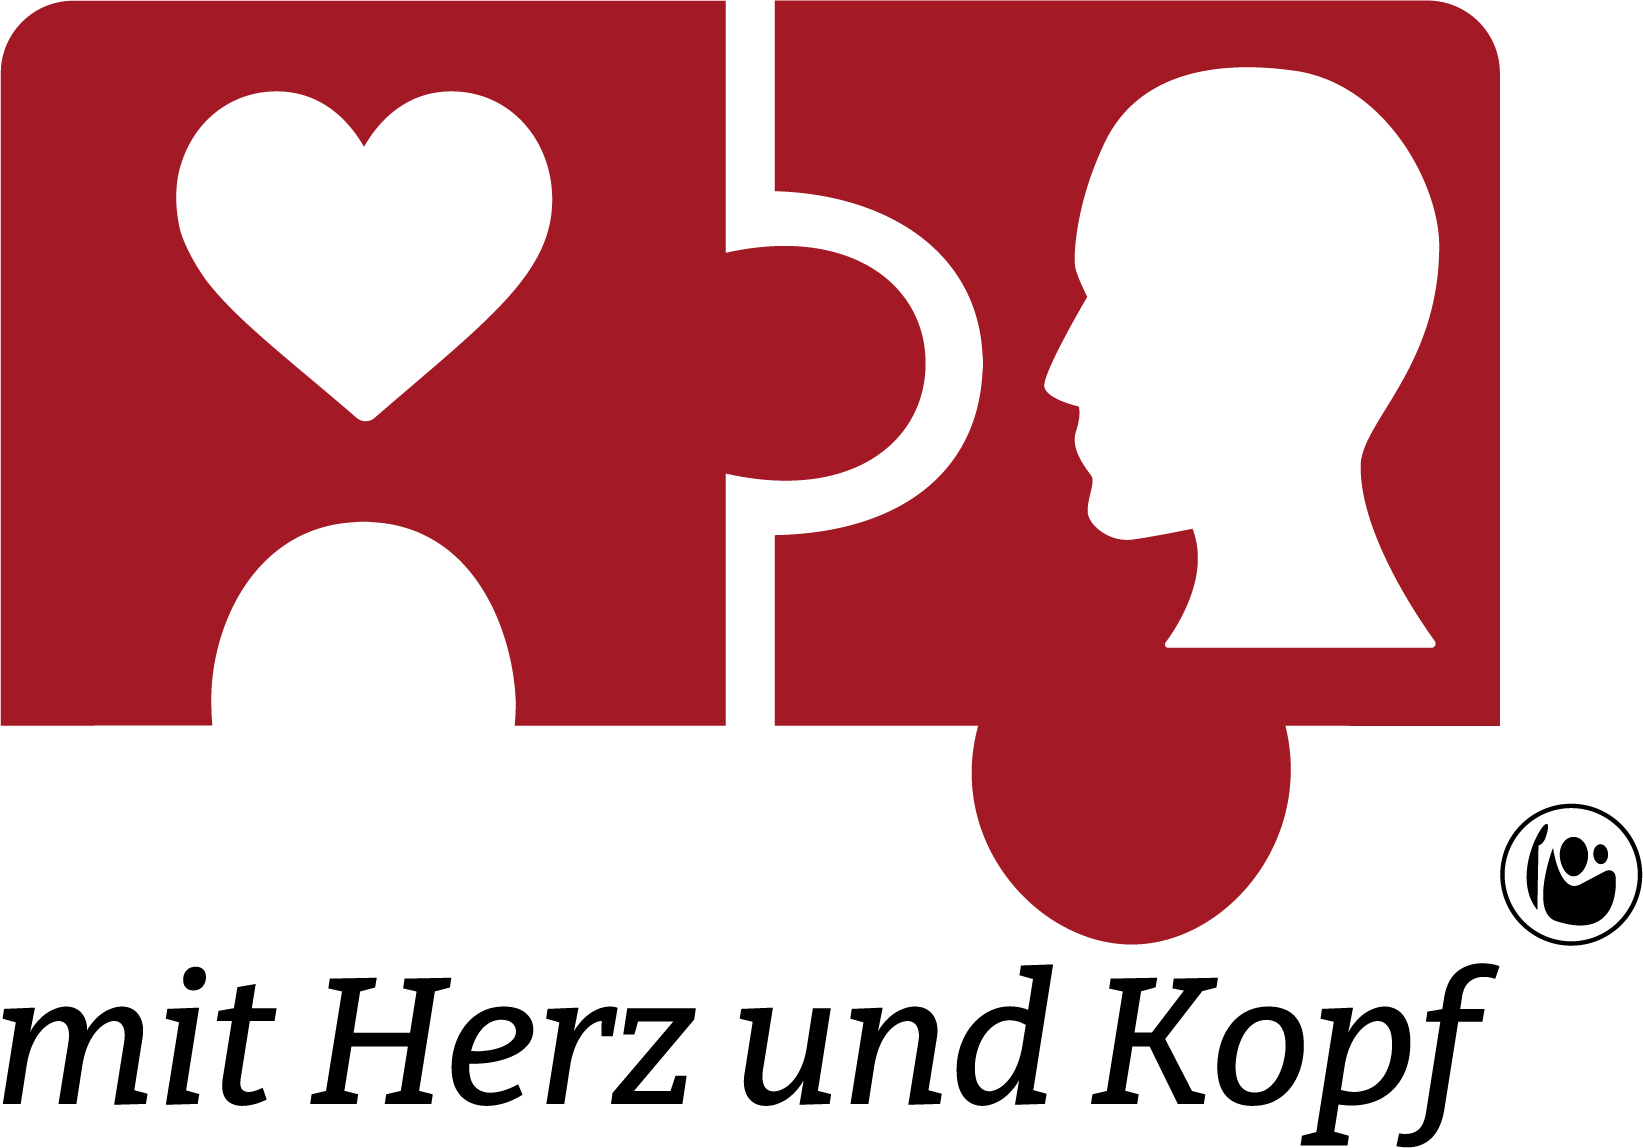 Logo Mit Herz und Kopf: Logo zeigt zwei ineinandergreifende rote Puzzleteile. Auf einem ist ein Herz und auf dem anderen ein stilisierter Kopf zu sehen